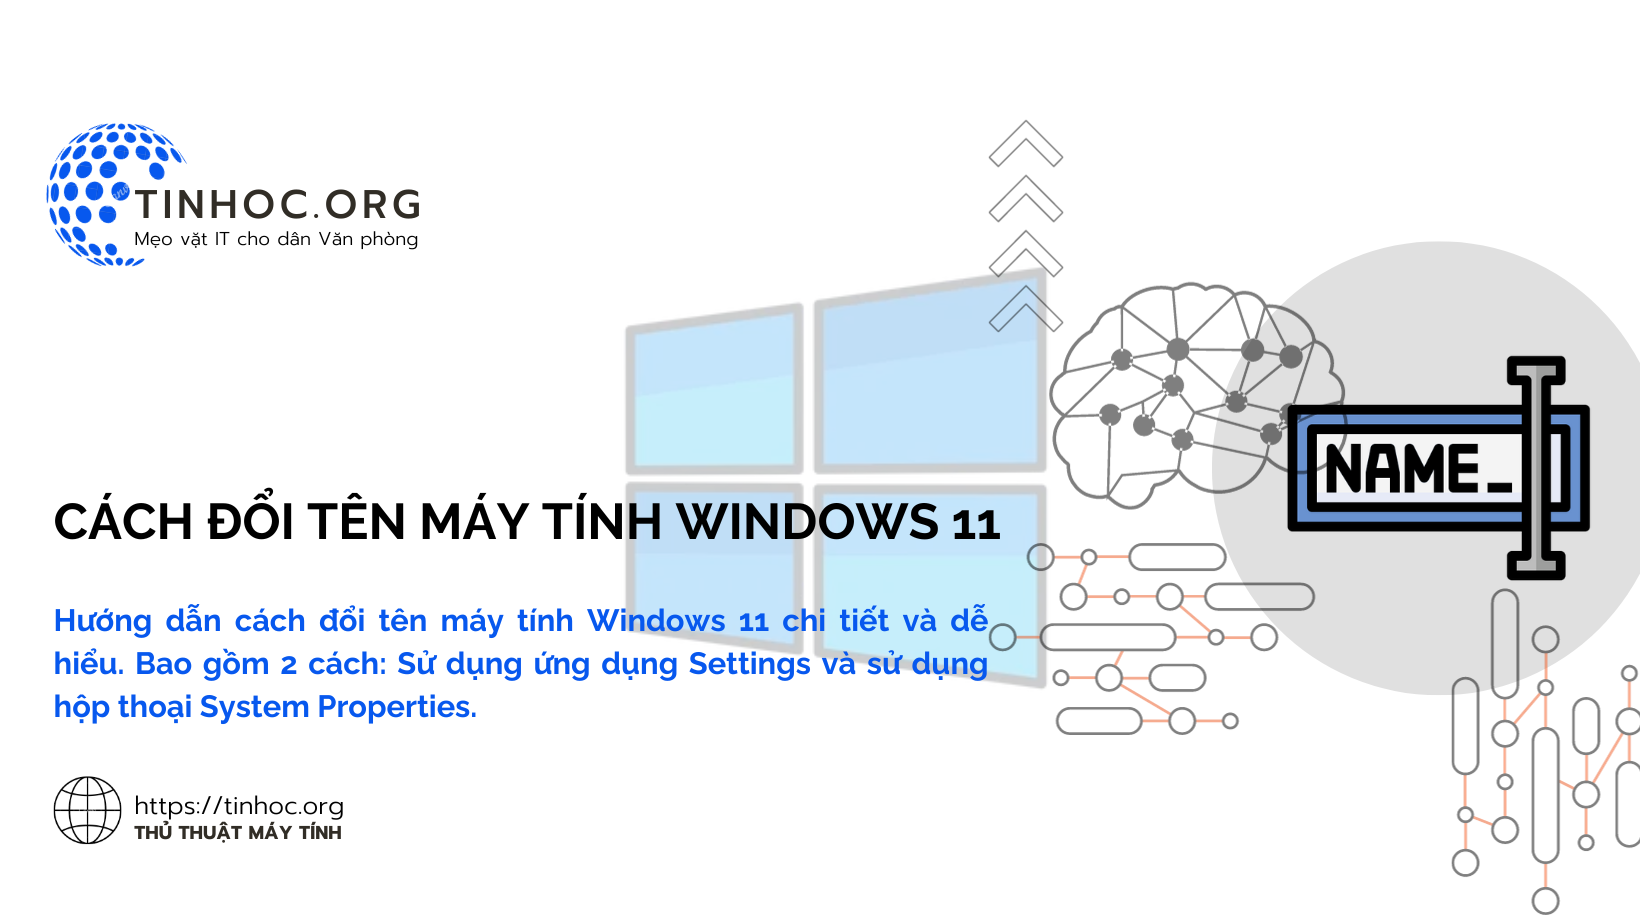 Hướng dẫn cách đổi tên máy tính Windows 11 chi tiết và dễ hiểu. Bao gồm 2 cách: Sử dụng ứng dụng Settings và sử dụng hộp thoại System Properties.